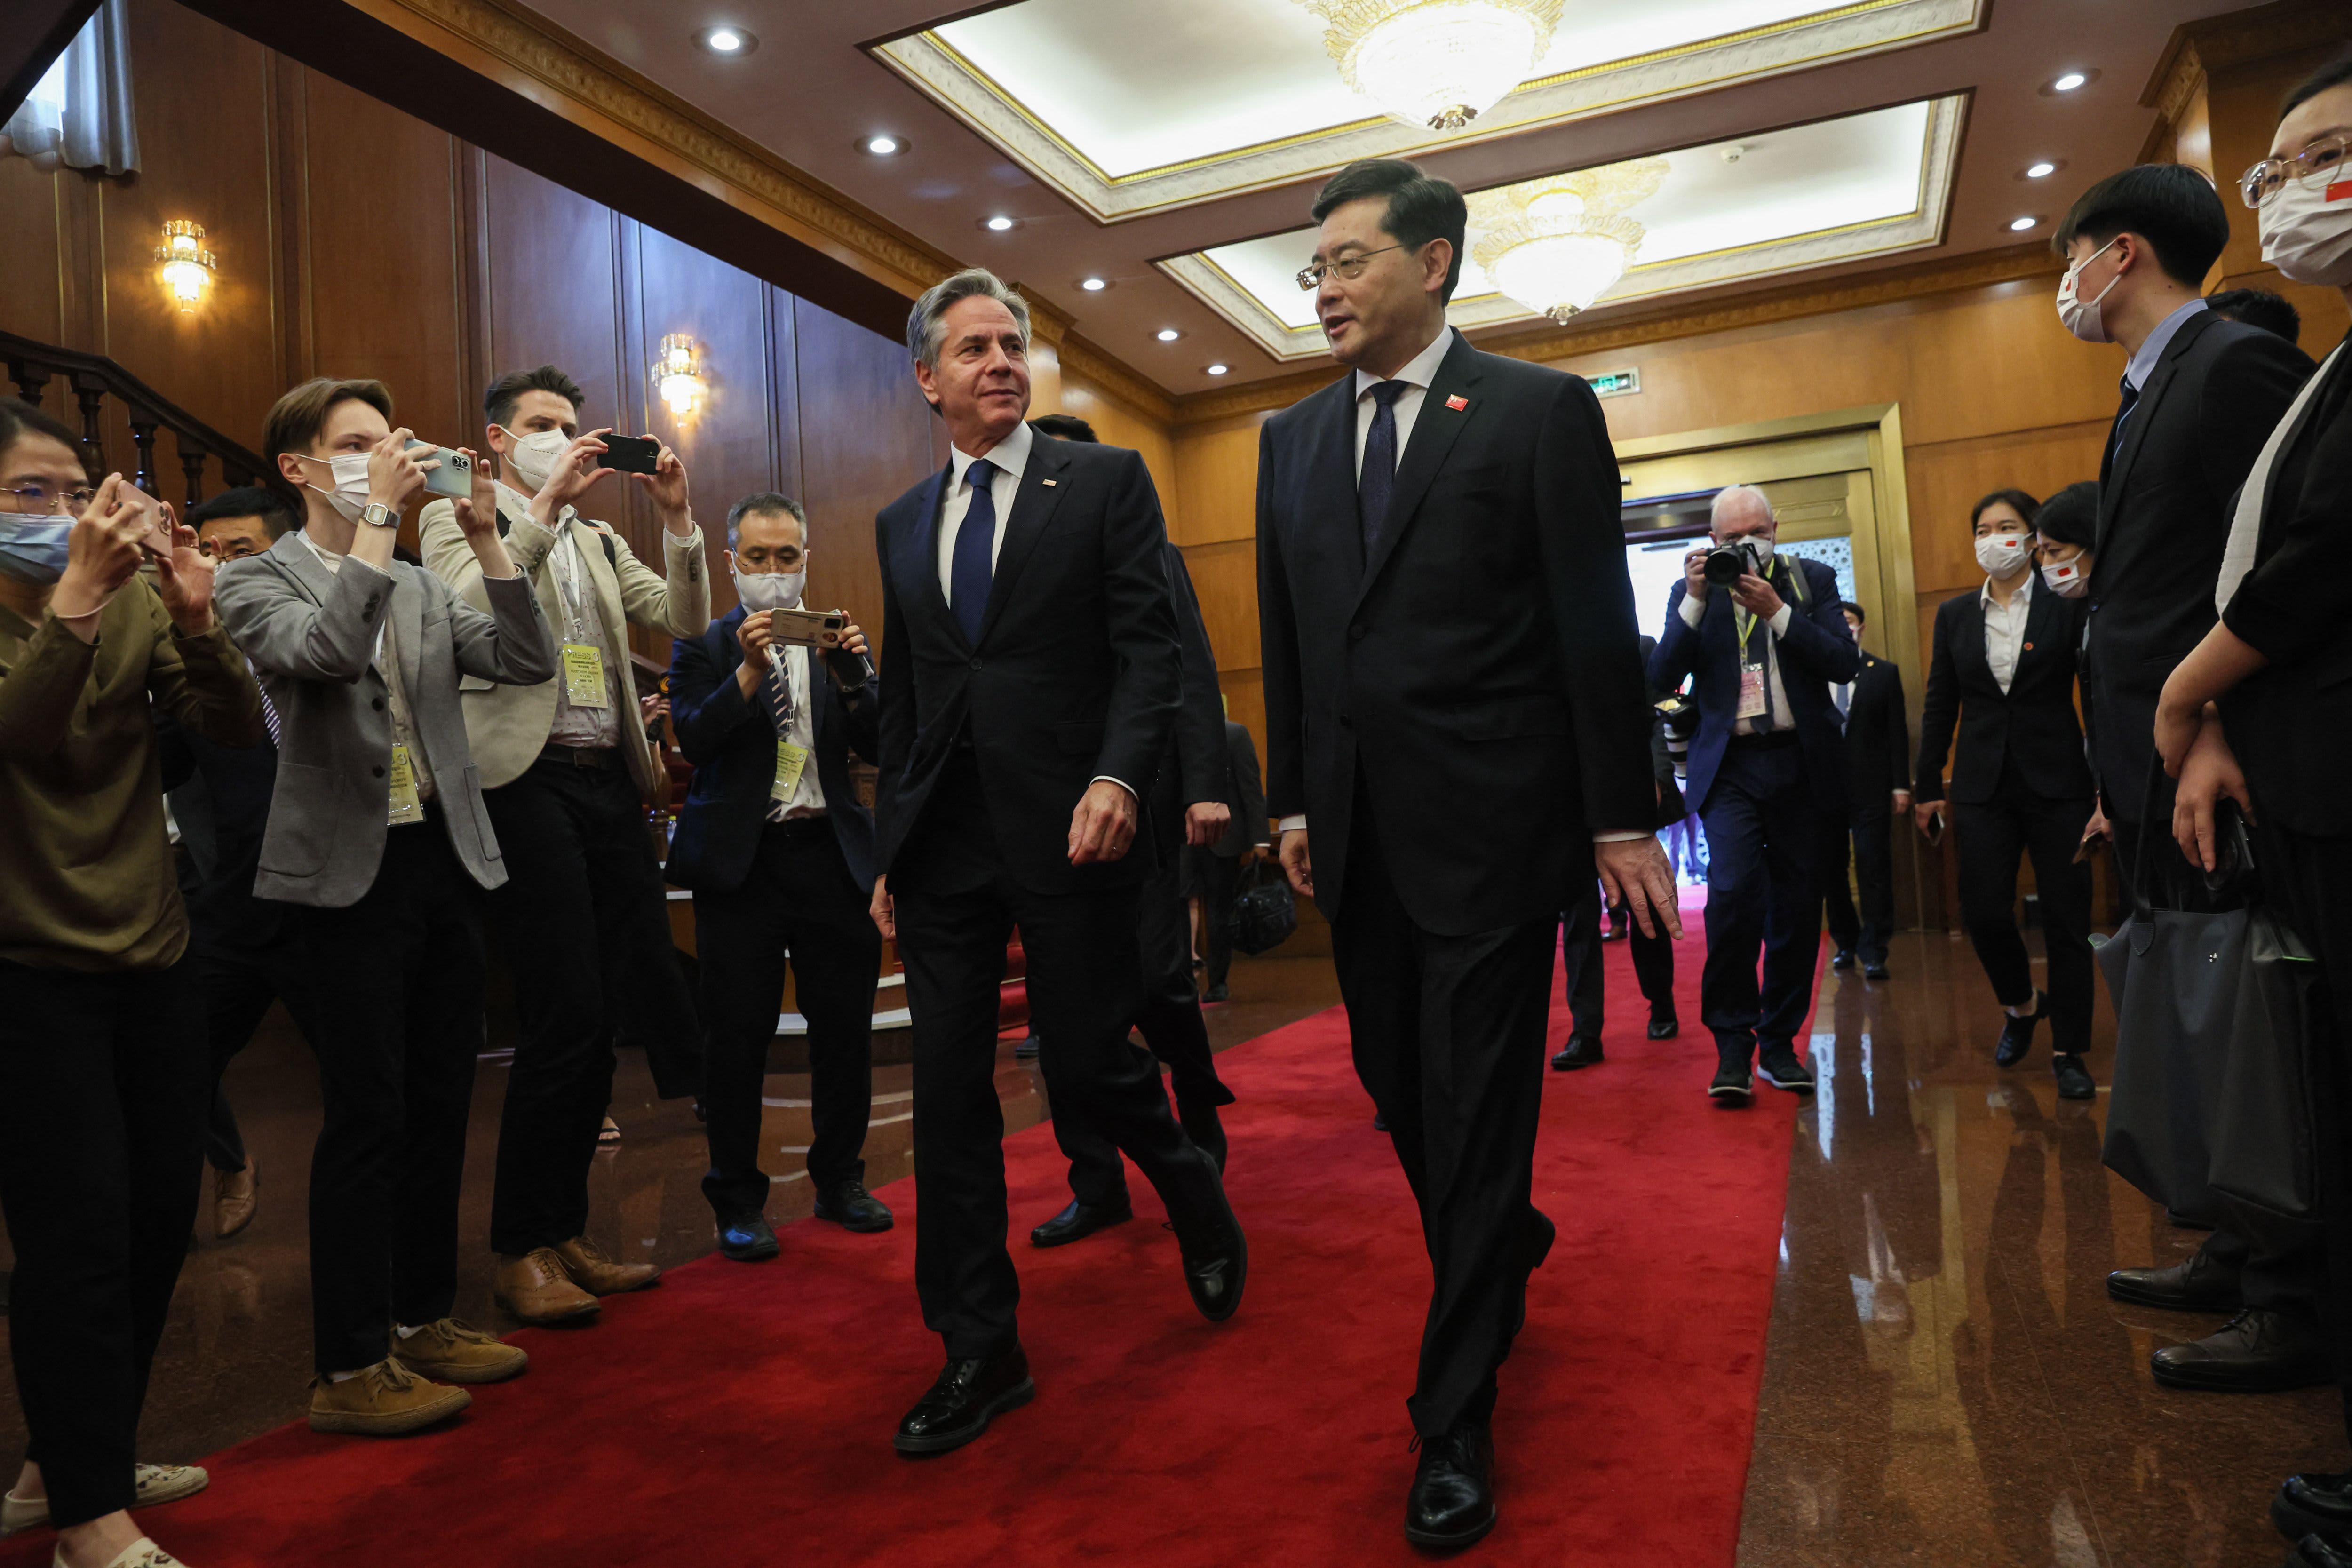 Blinken incontra il ministro degli Esteri cinese Chen Gang durante un viaggio ad alto rischio